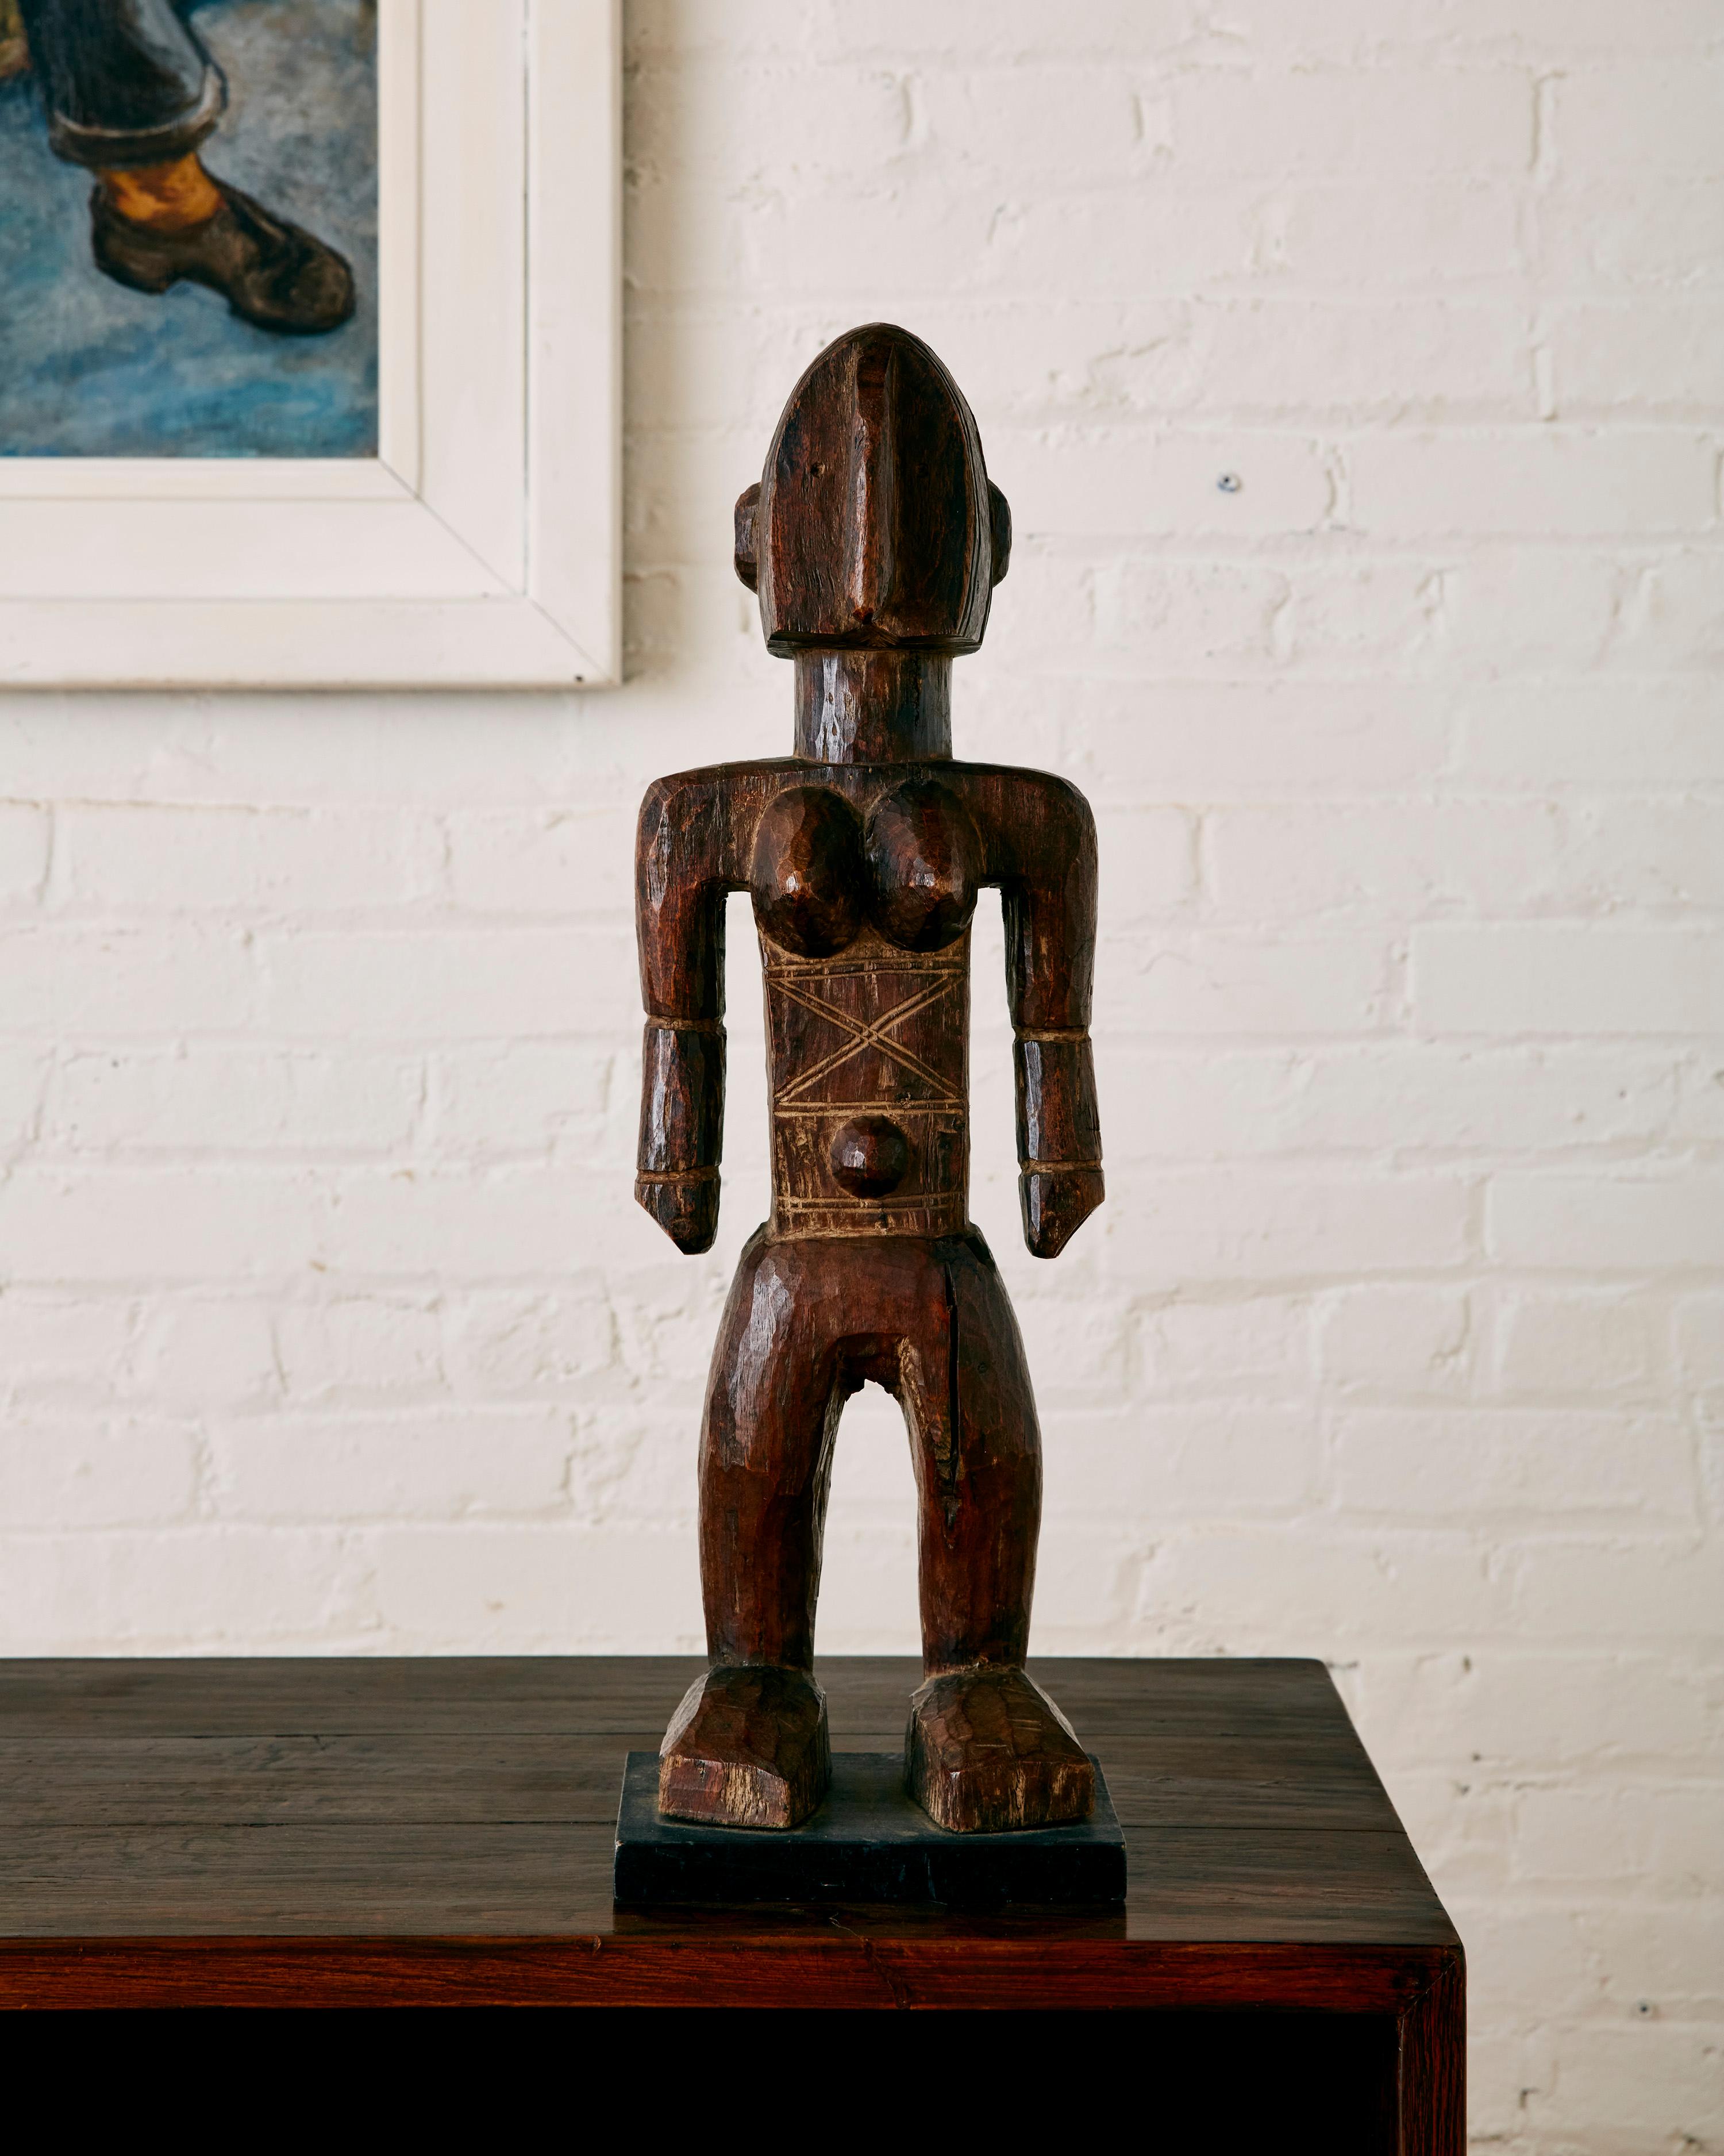 Sculpture Bambara d'Afrique de l'Ouest représentant une figure féminine.

La sculpture bambara est essentiellement consacrée aux figures féminines. Une catégorie importante est celle des 